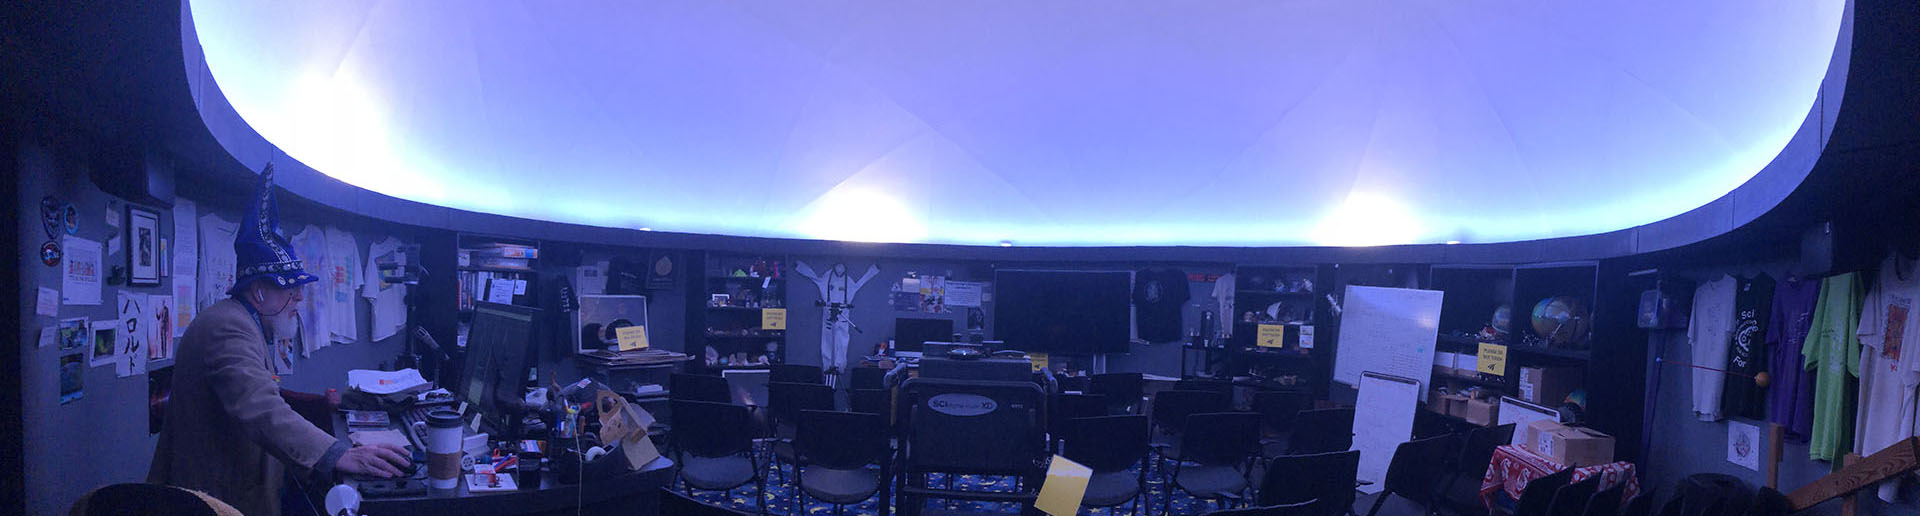 Planetarium Interior Image